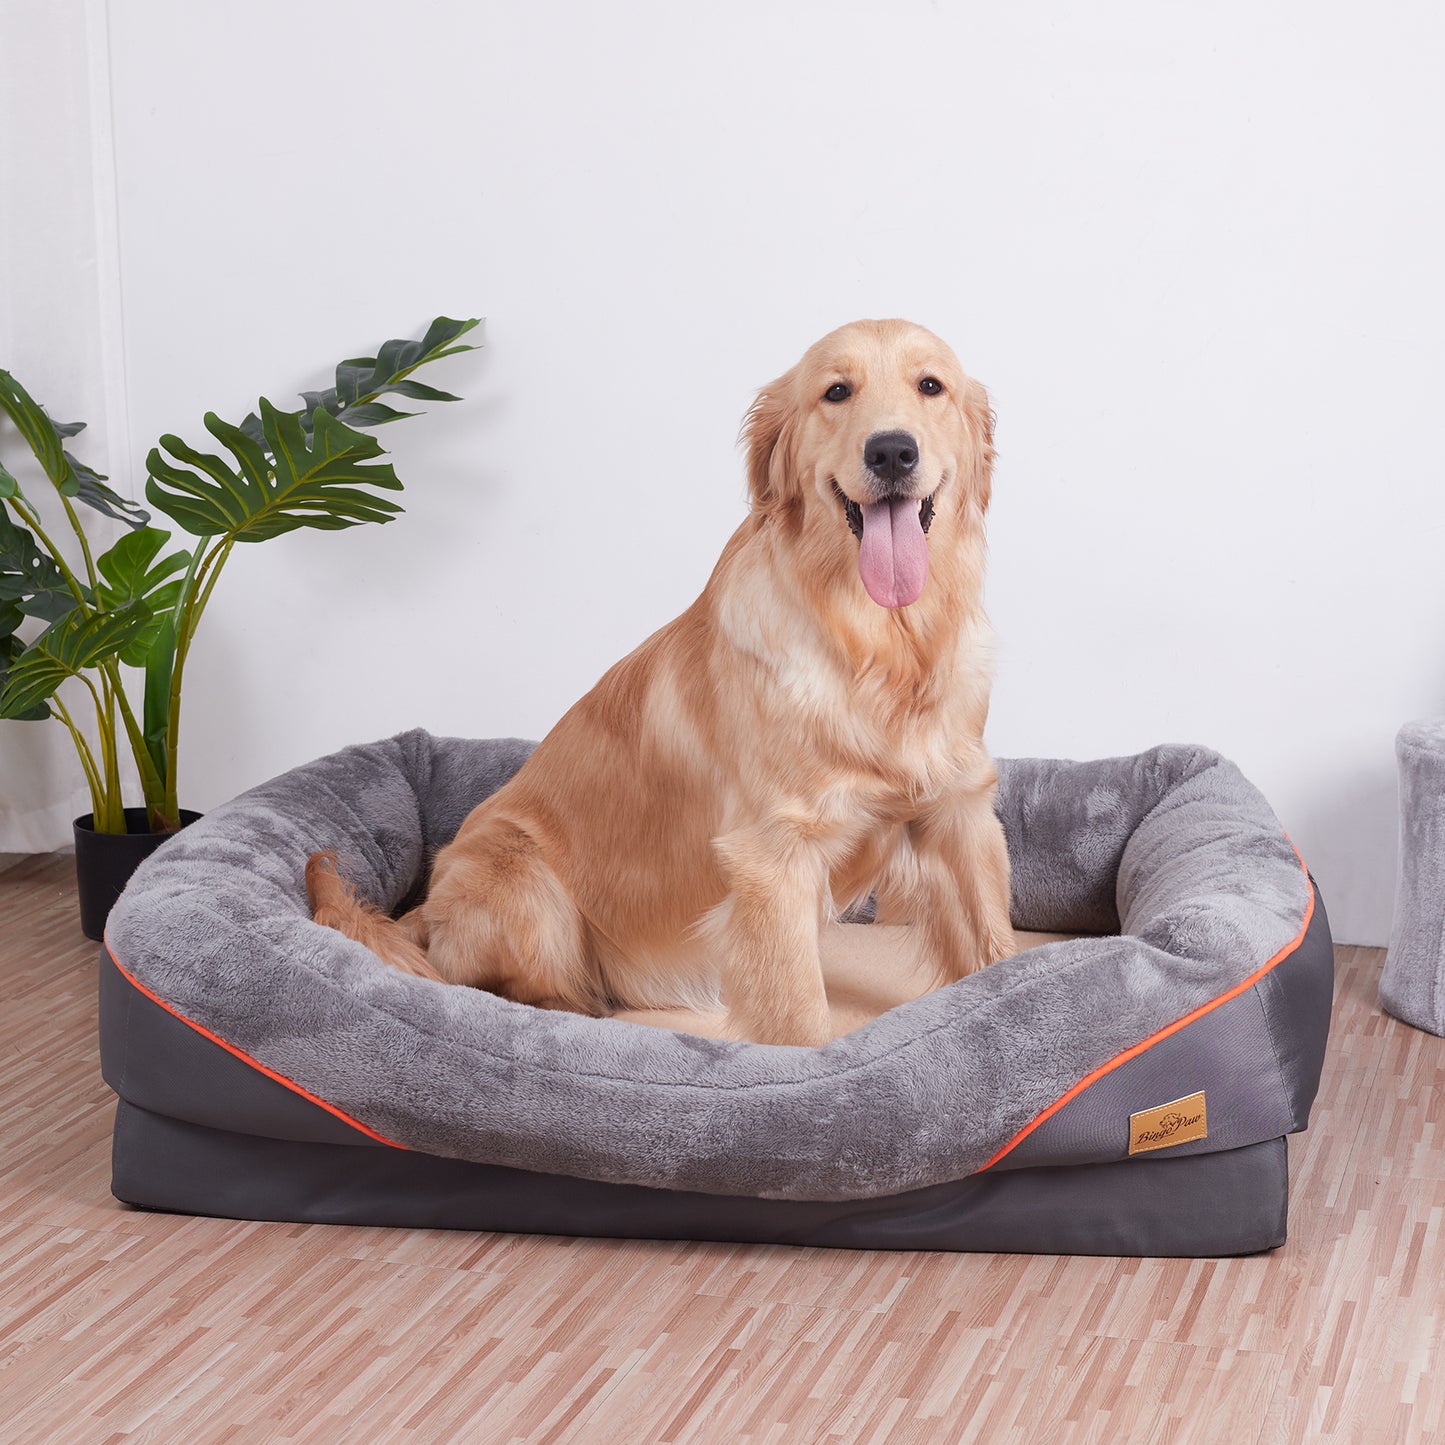 Orthopedic Dog Pet Bed Sleep Bedding Washable Cover Waterproof Lounge